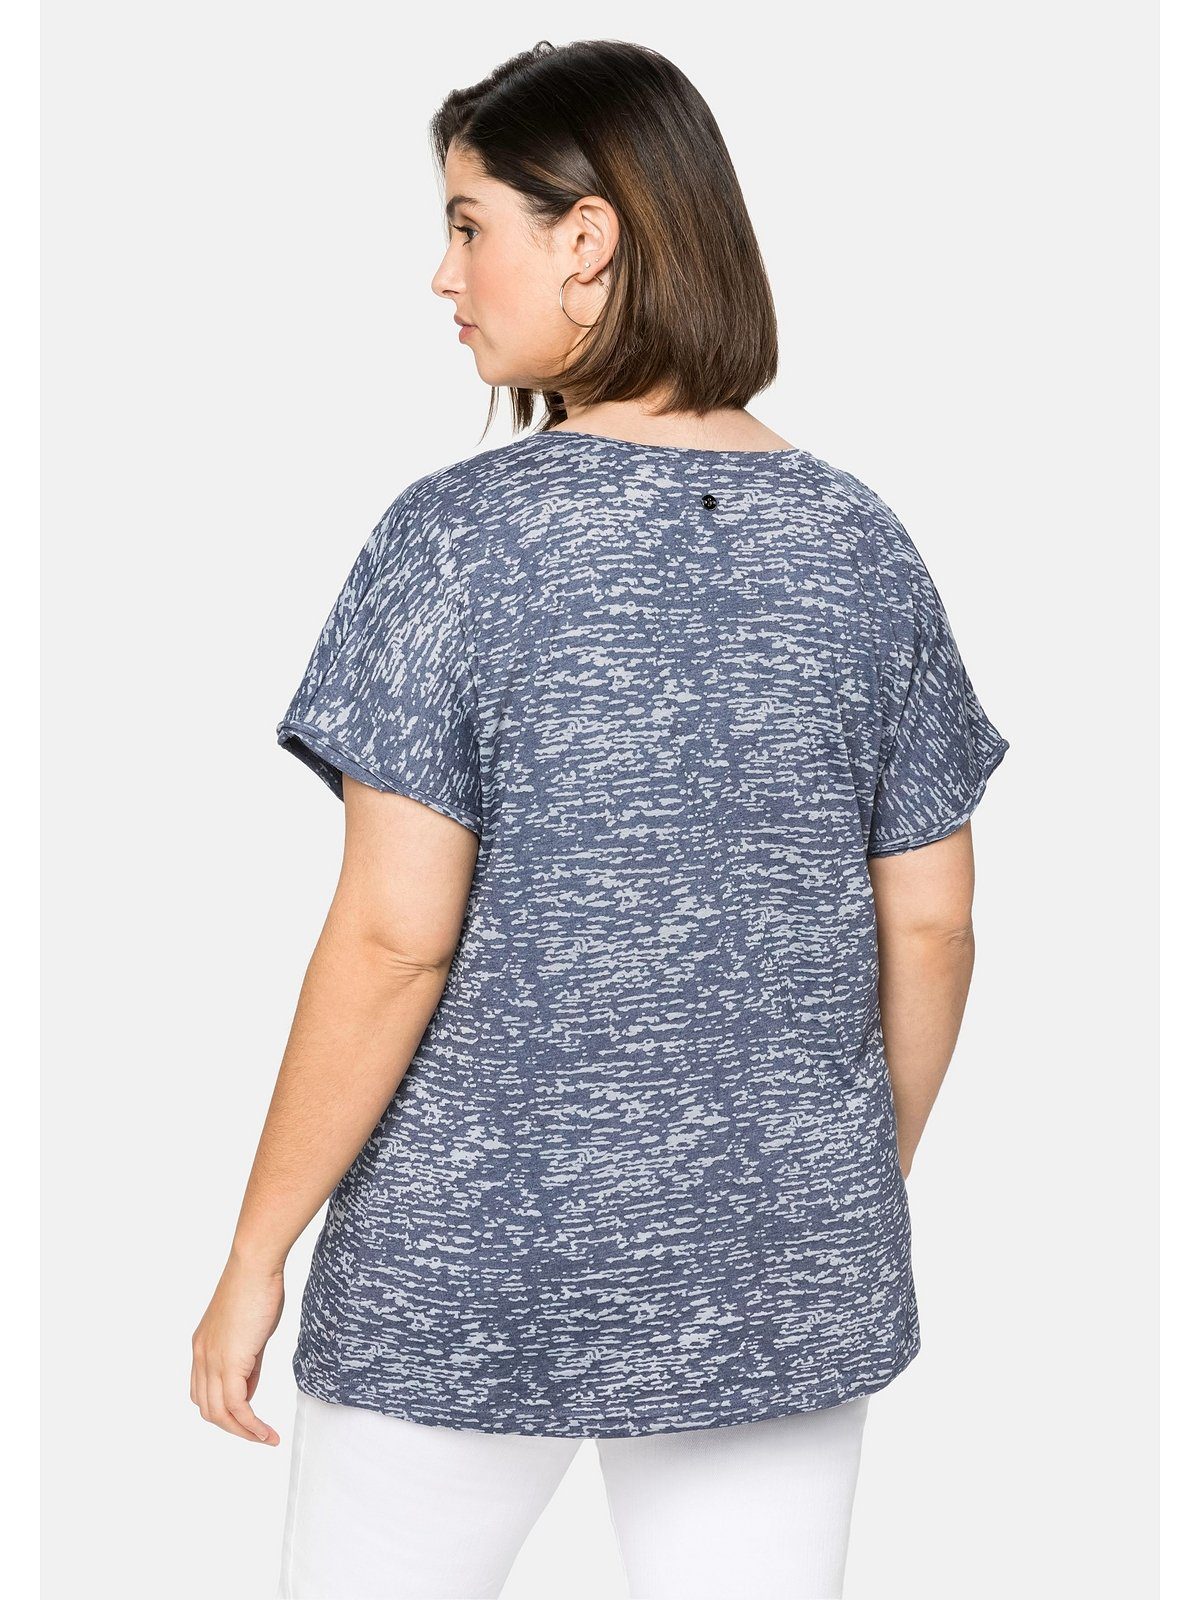 Sheego Größen transparent mit marine T-Shirt leicht Große Ausbrennermuster,